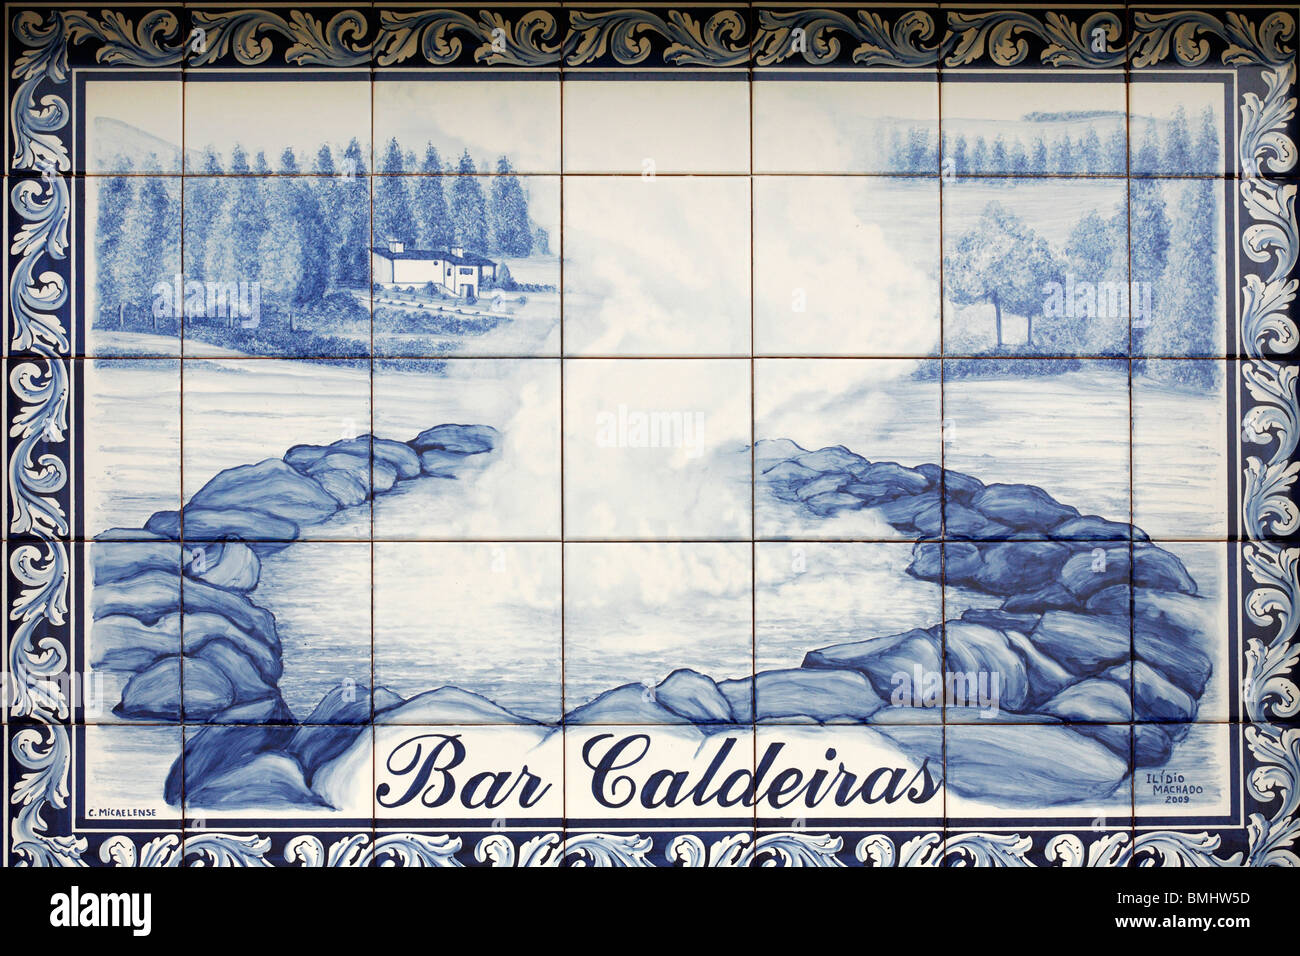 Panel de tuiles vernissées bleu portugais azulejo (), dans le village de Furnas, montrant un business. Açores, Portugal Banque D'Images